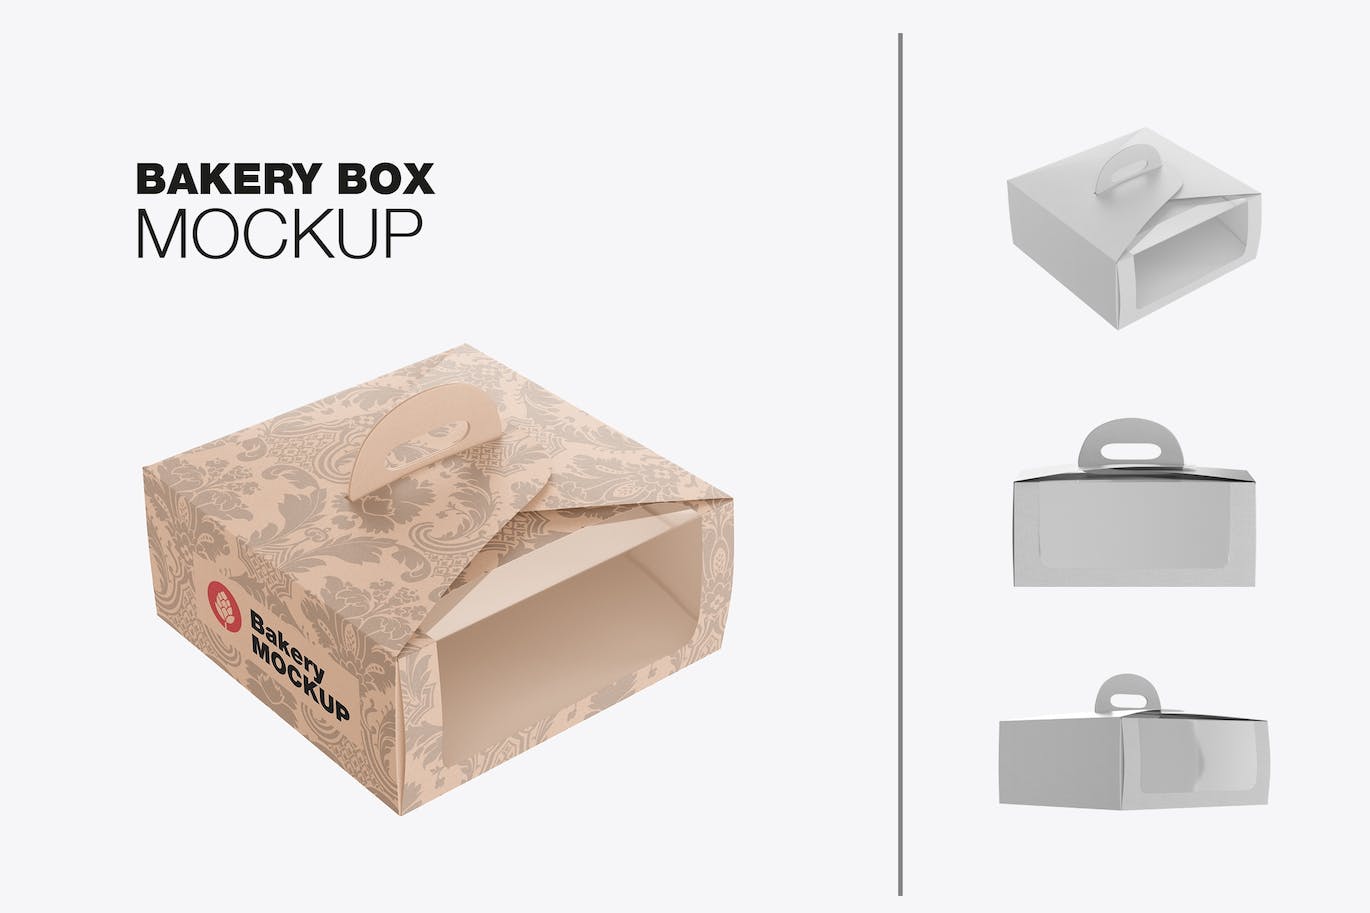 透明塑料窗蛋糕纸盒包装样机 (PSD)免费下载